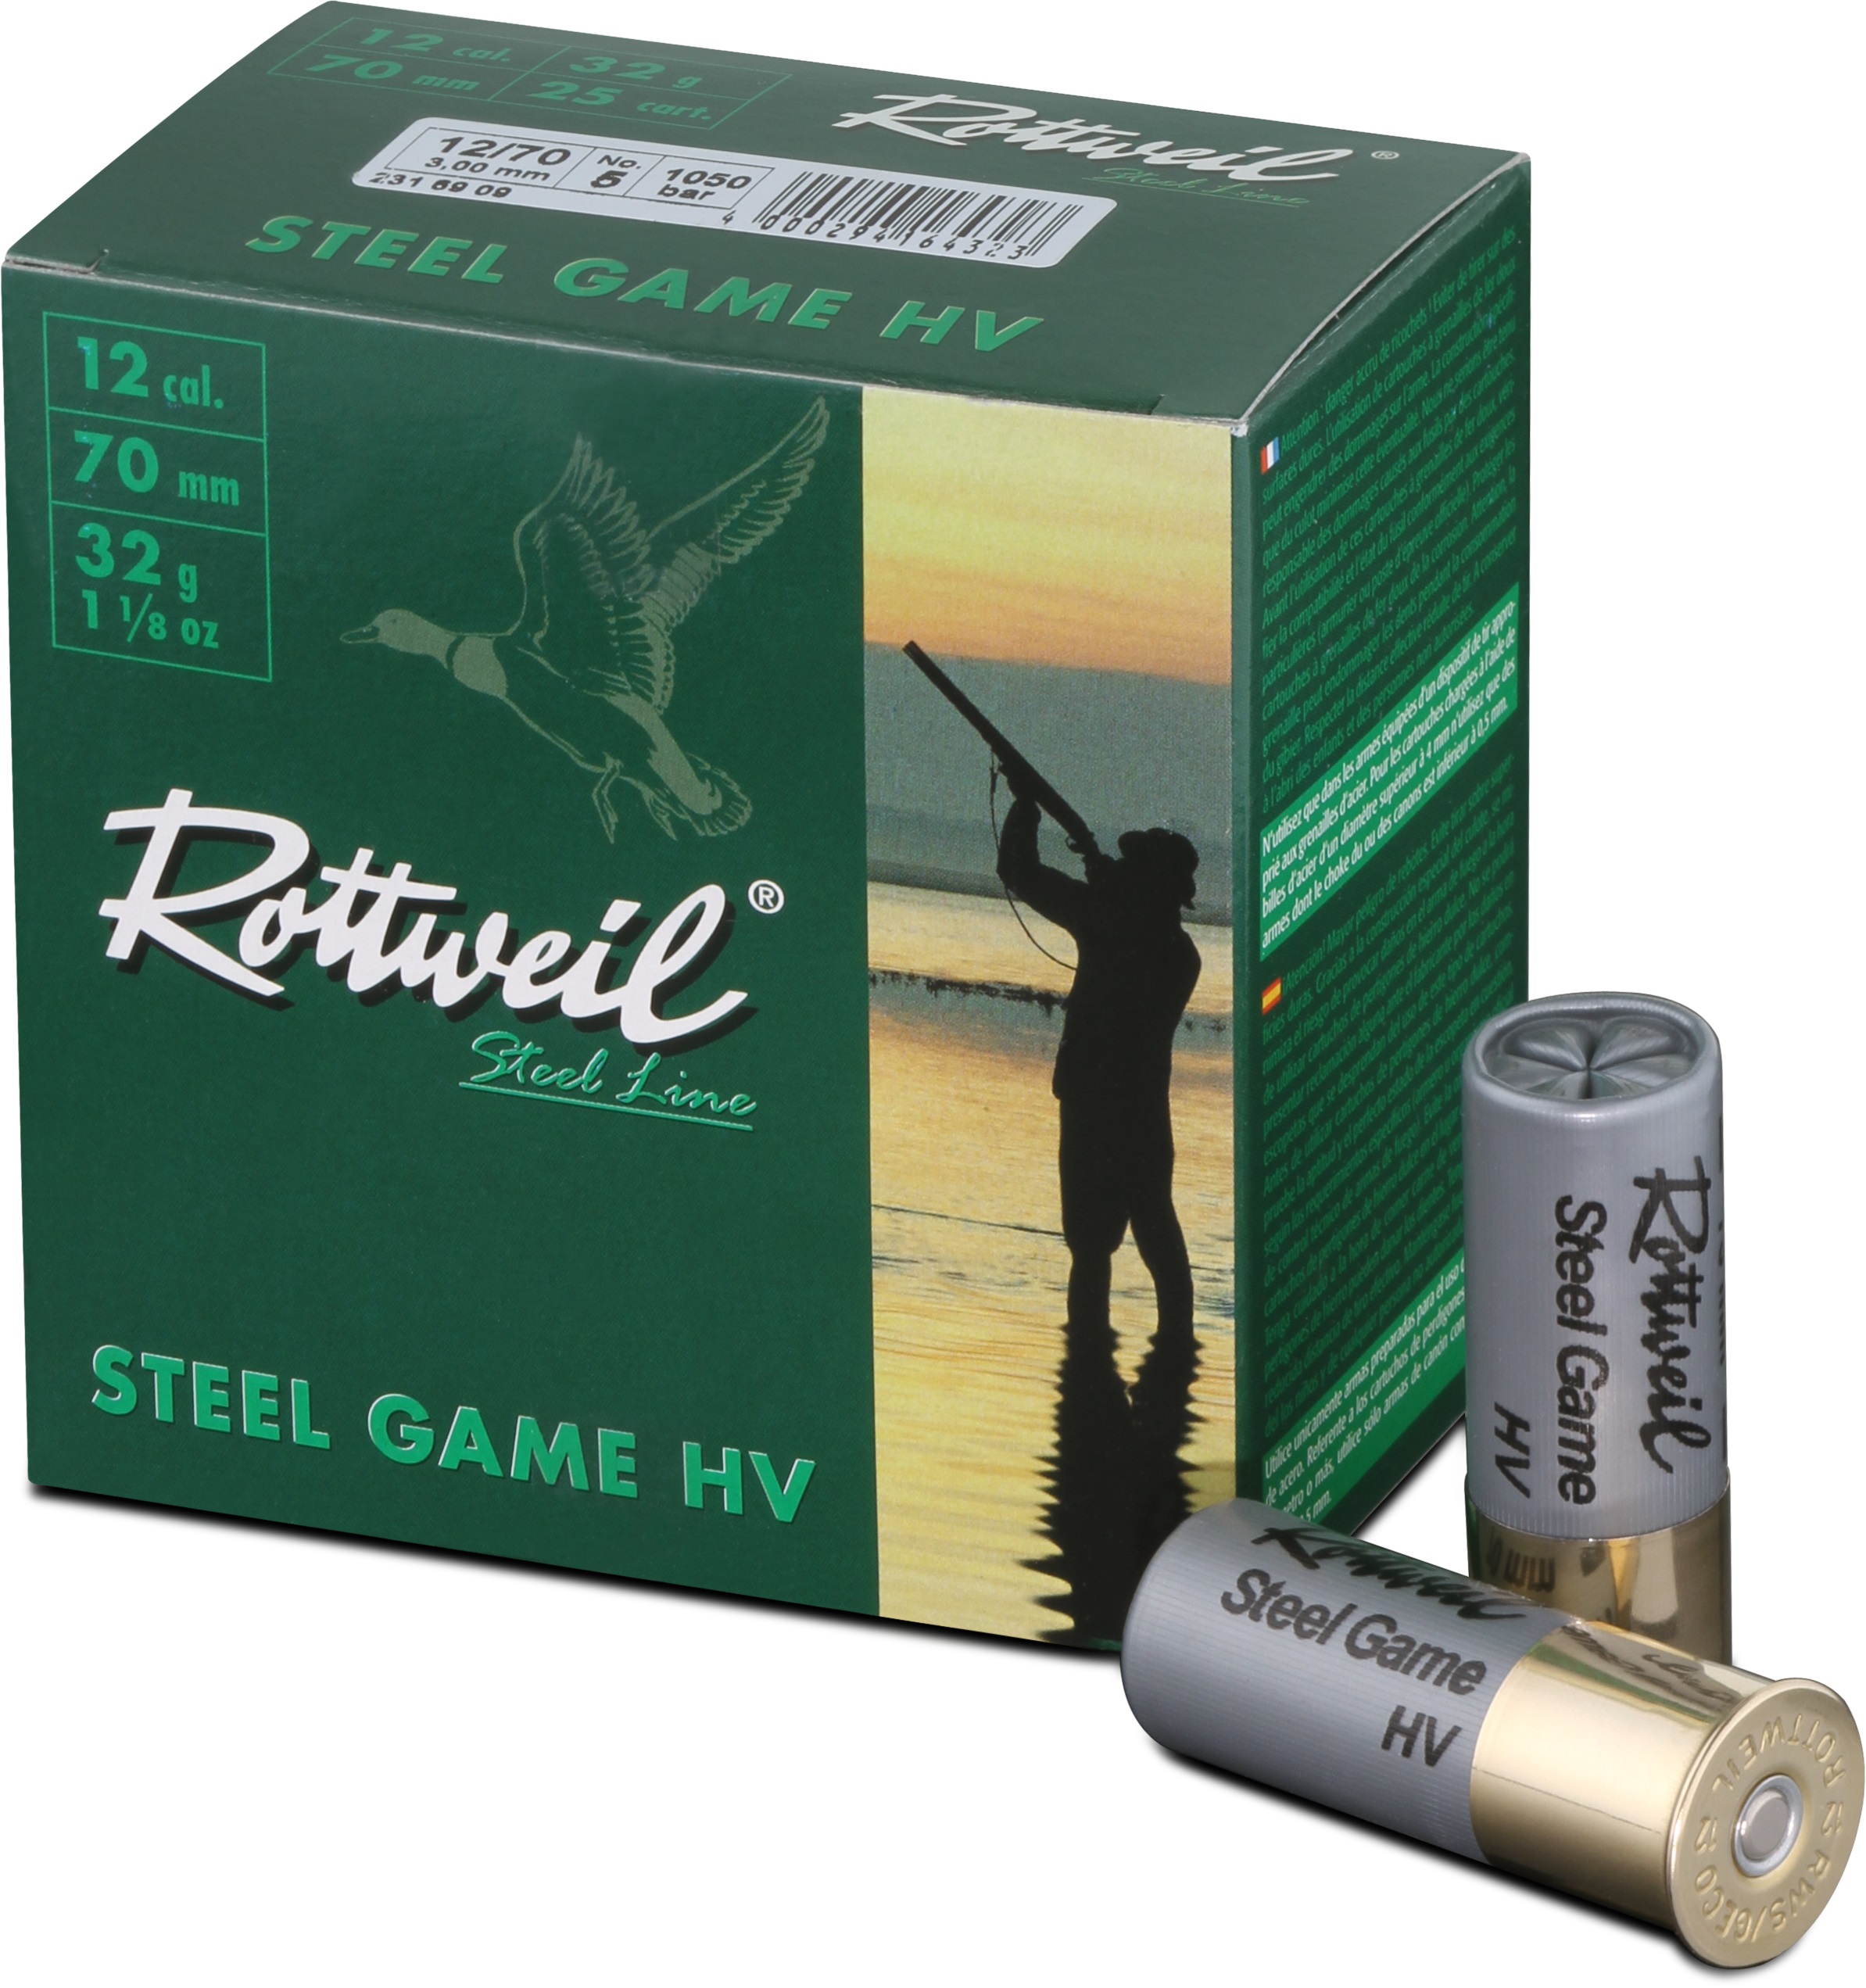 ROTTWEIL-Steel Game HV 12/70 3,25mm 25er